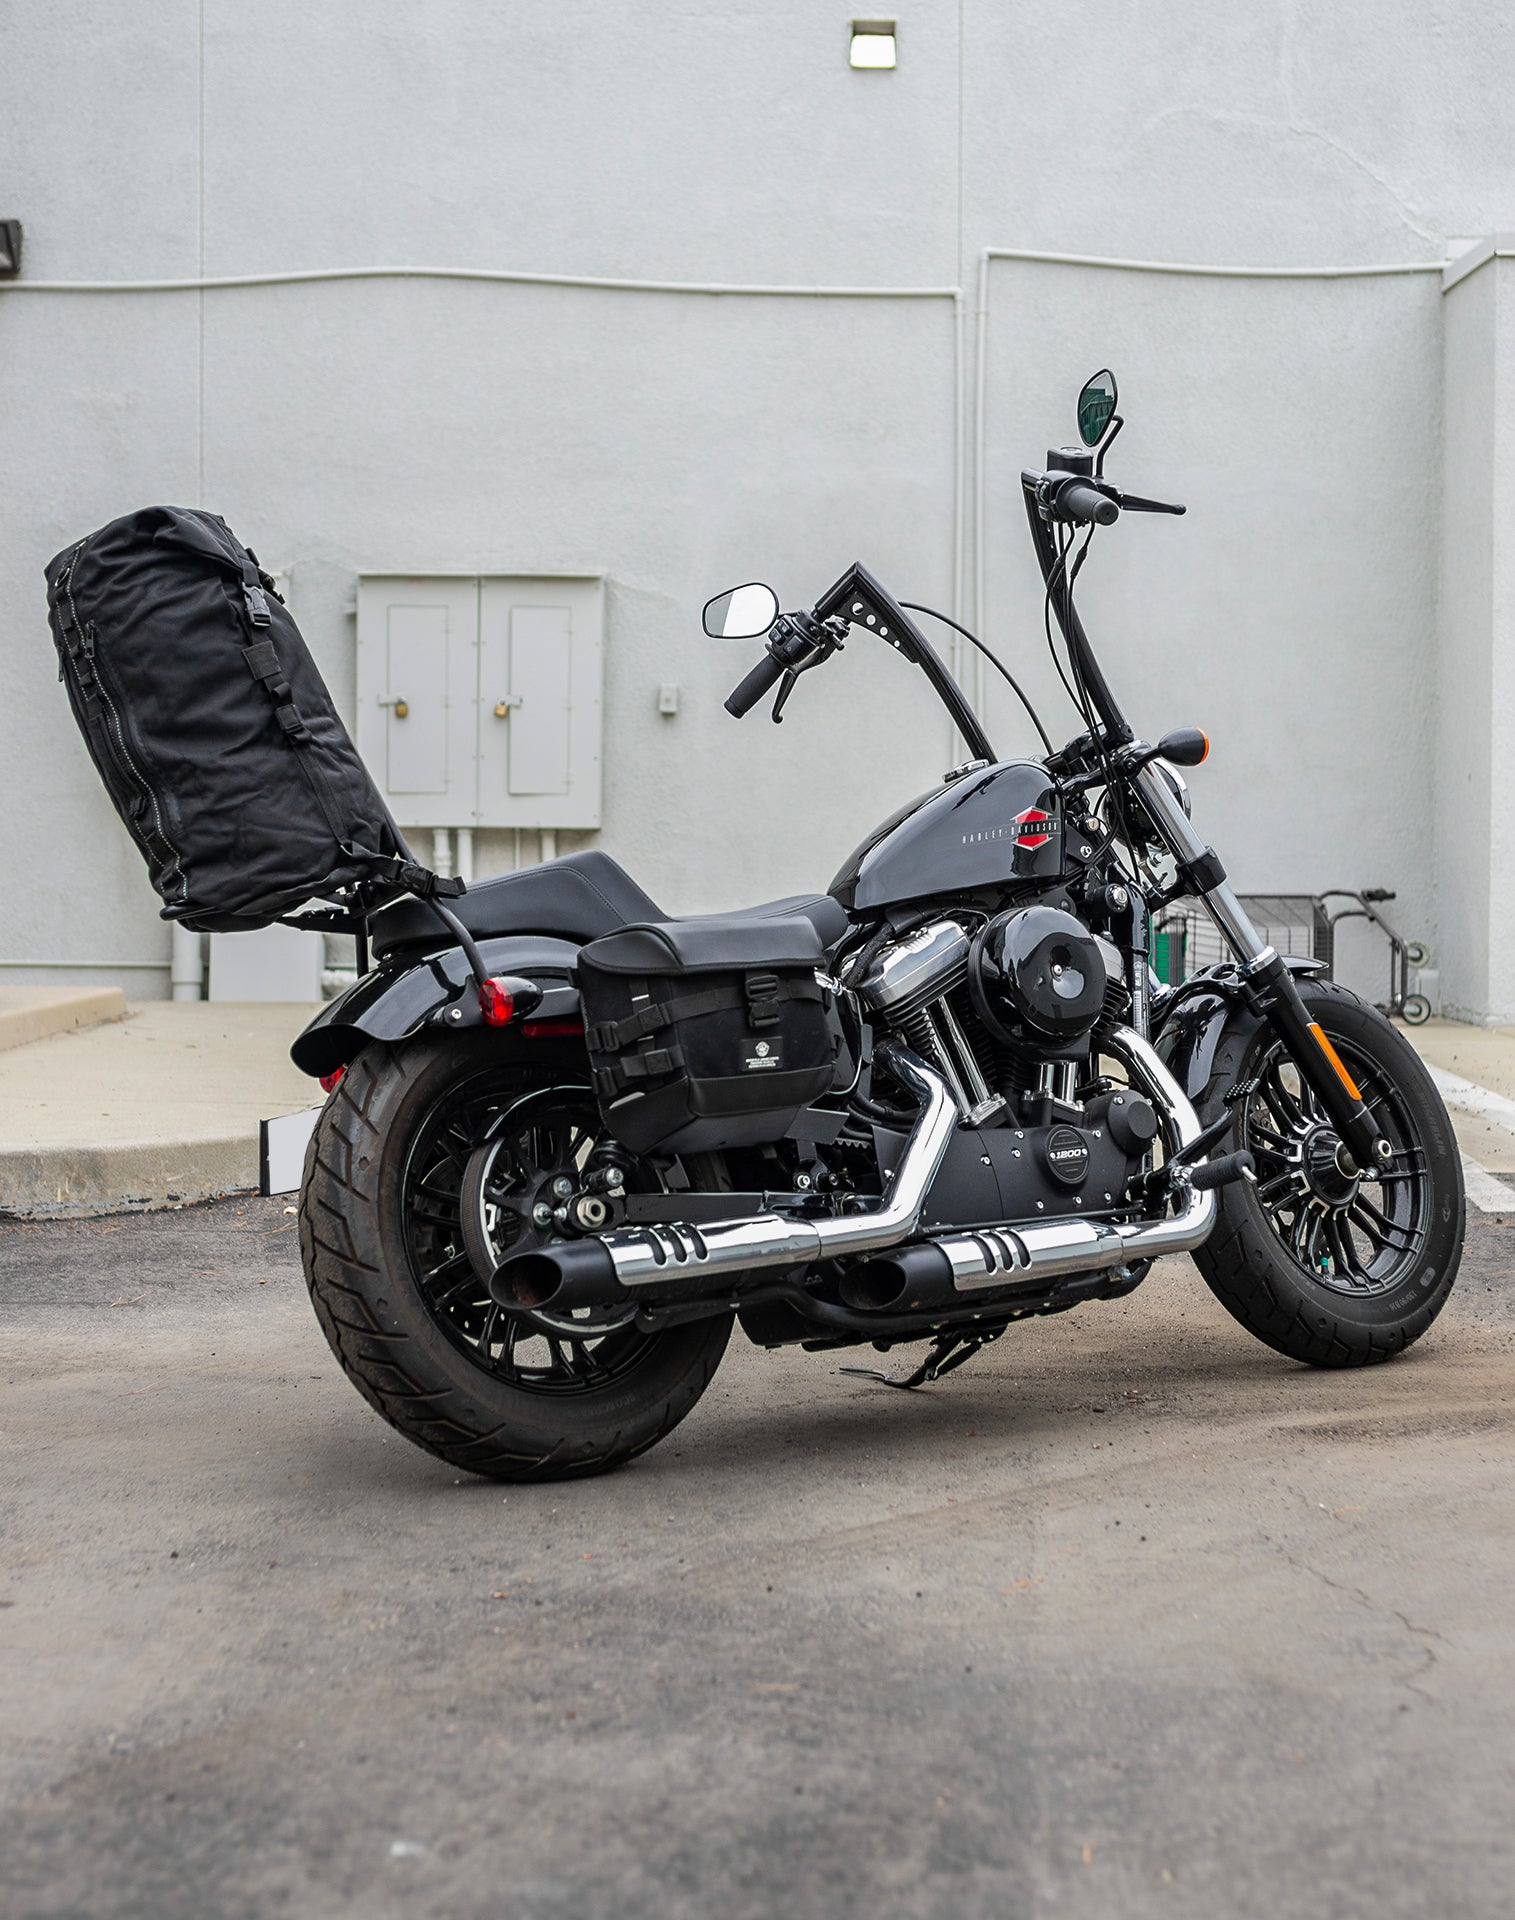 35L - Renegade XL Suzuki Motorcycle Tail Bag